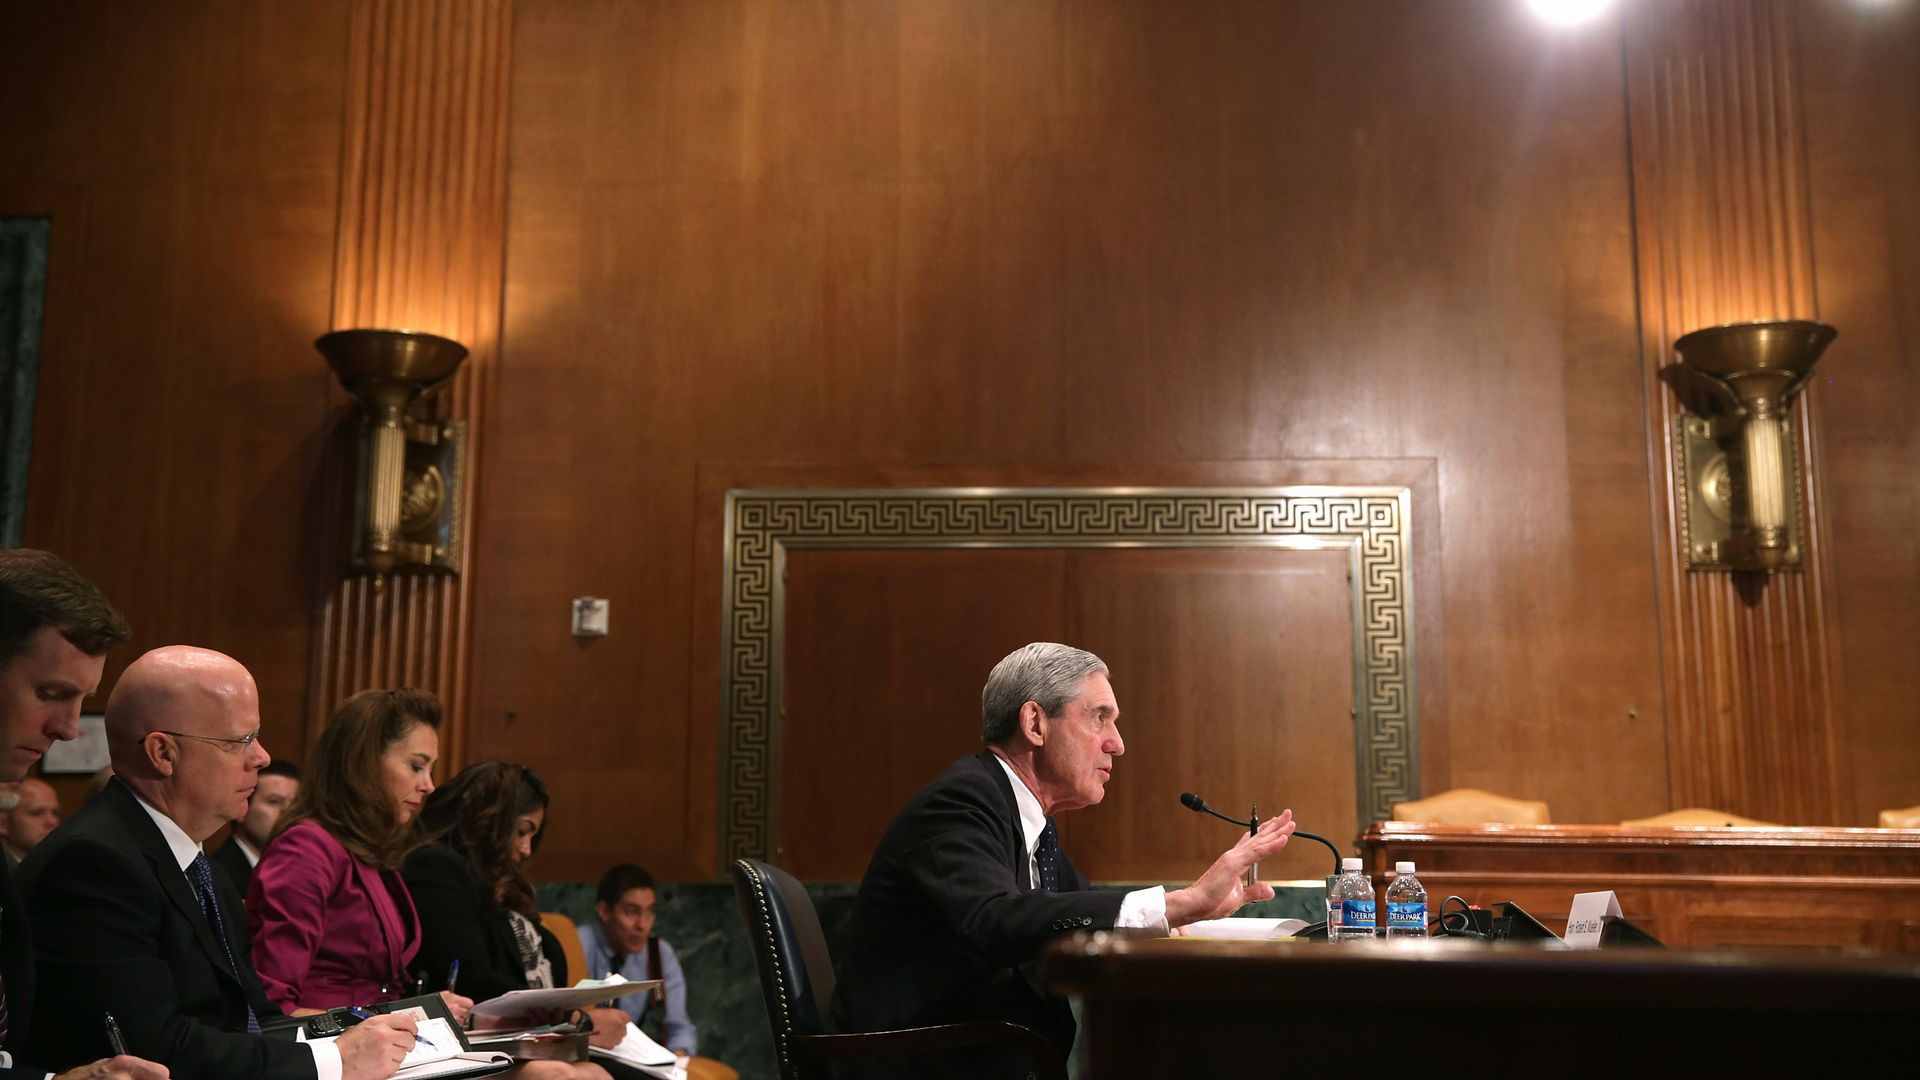 In this image, Mueller testifies